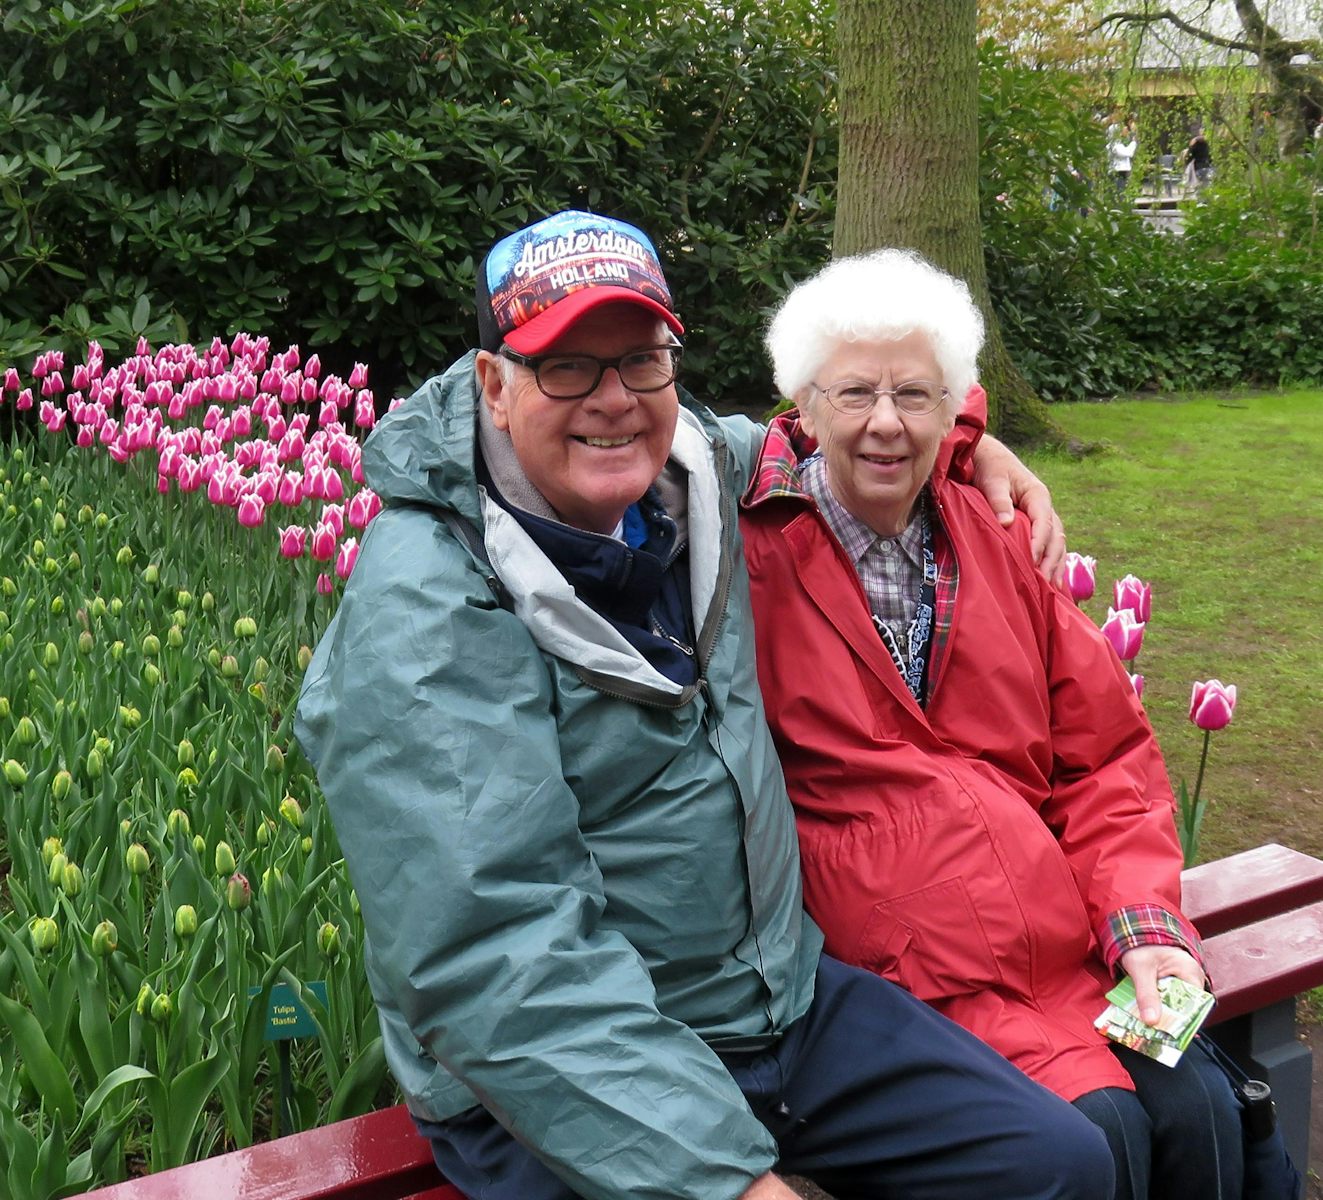 Our tour of Keukenhof Tulip Gardens